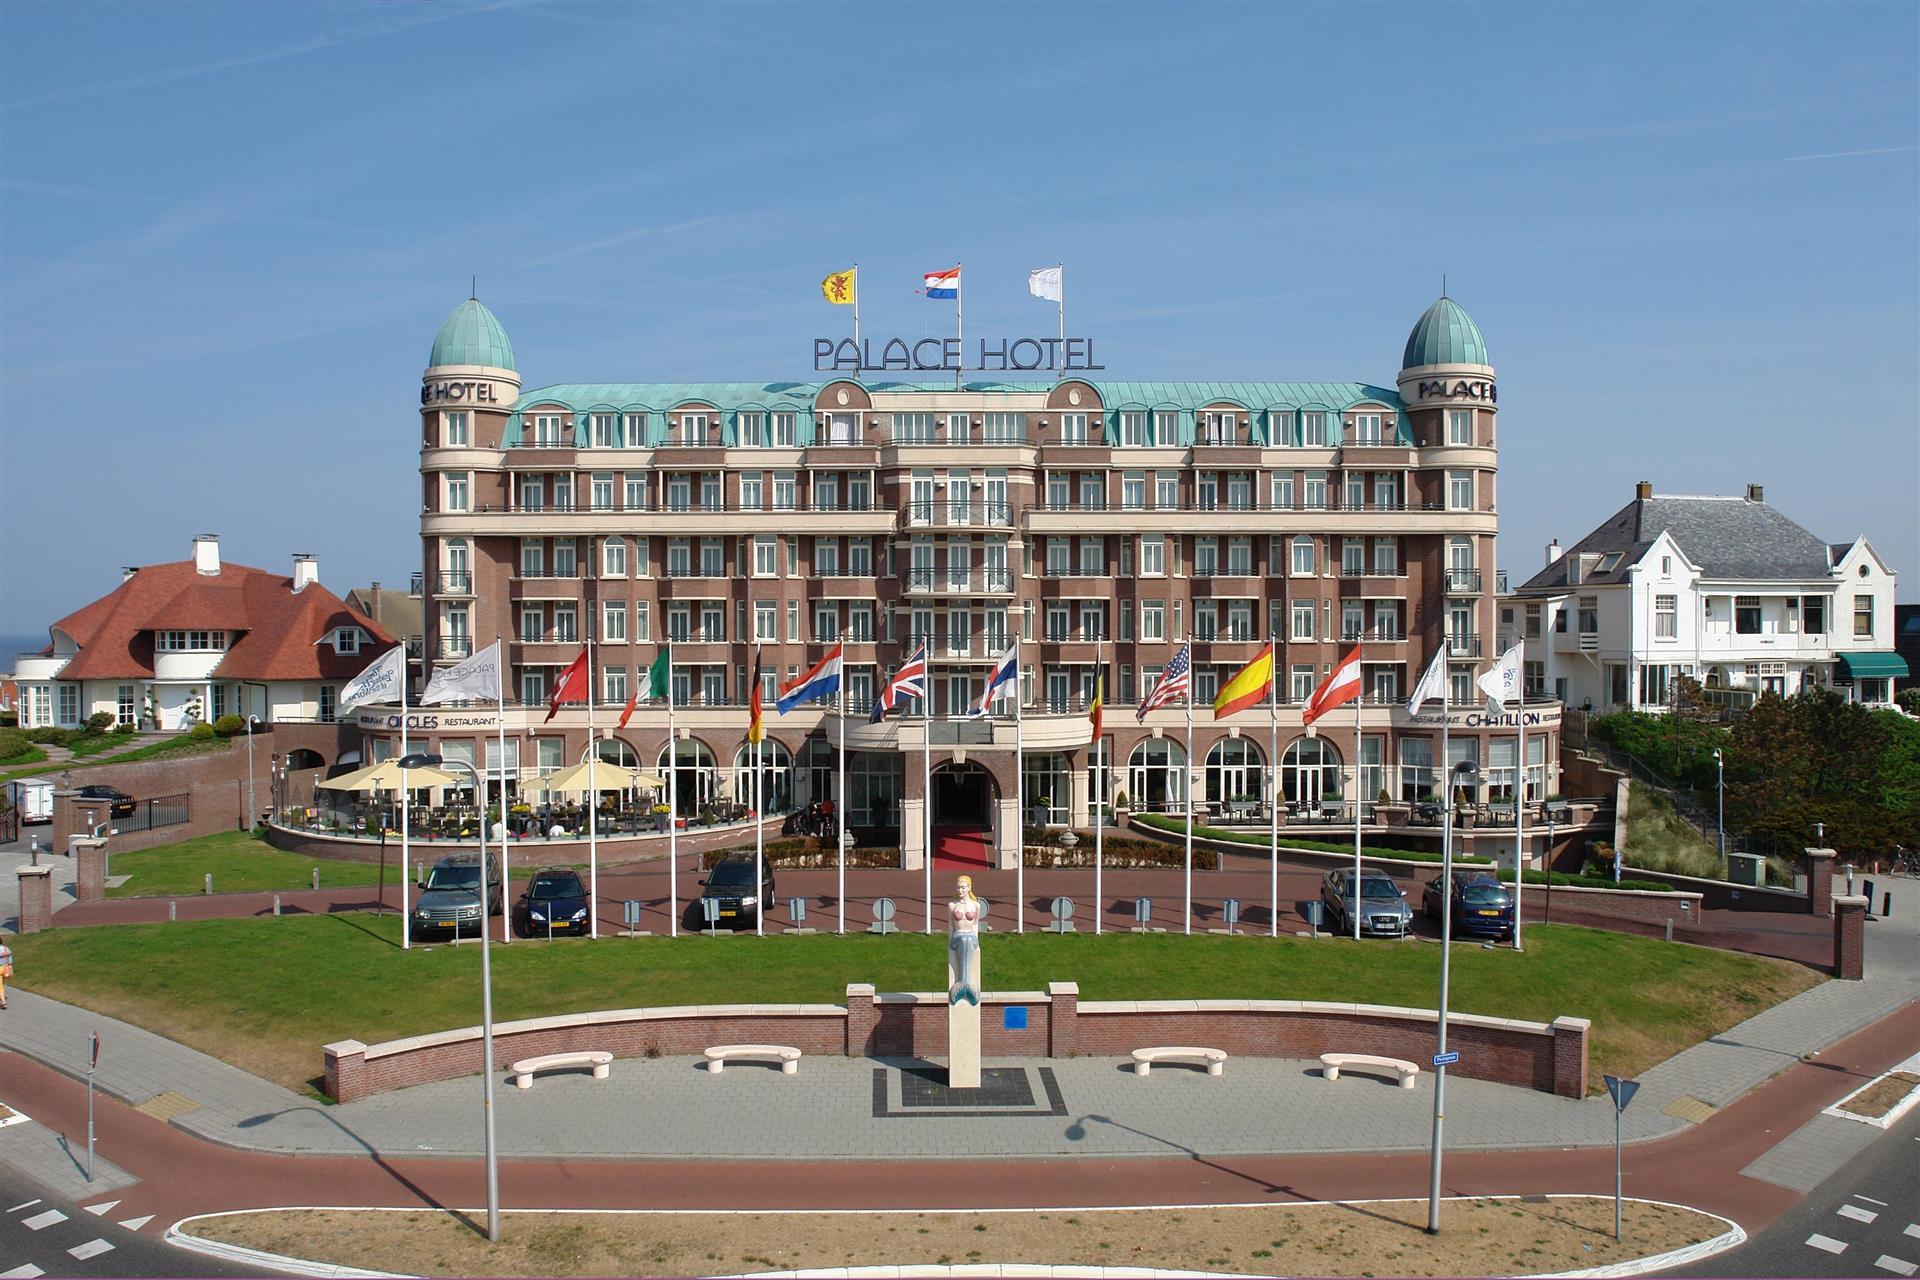 Van der Valk Palace Hotel Noordwijk in Noordwijk, NL